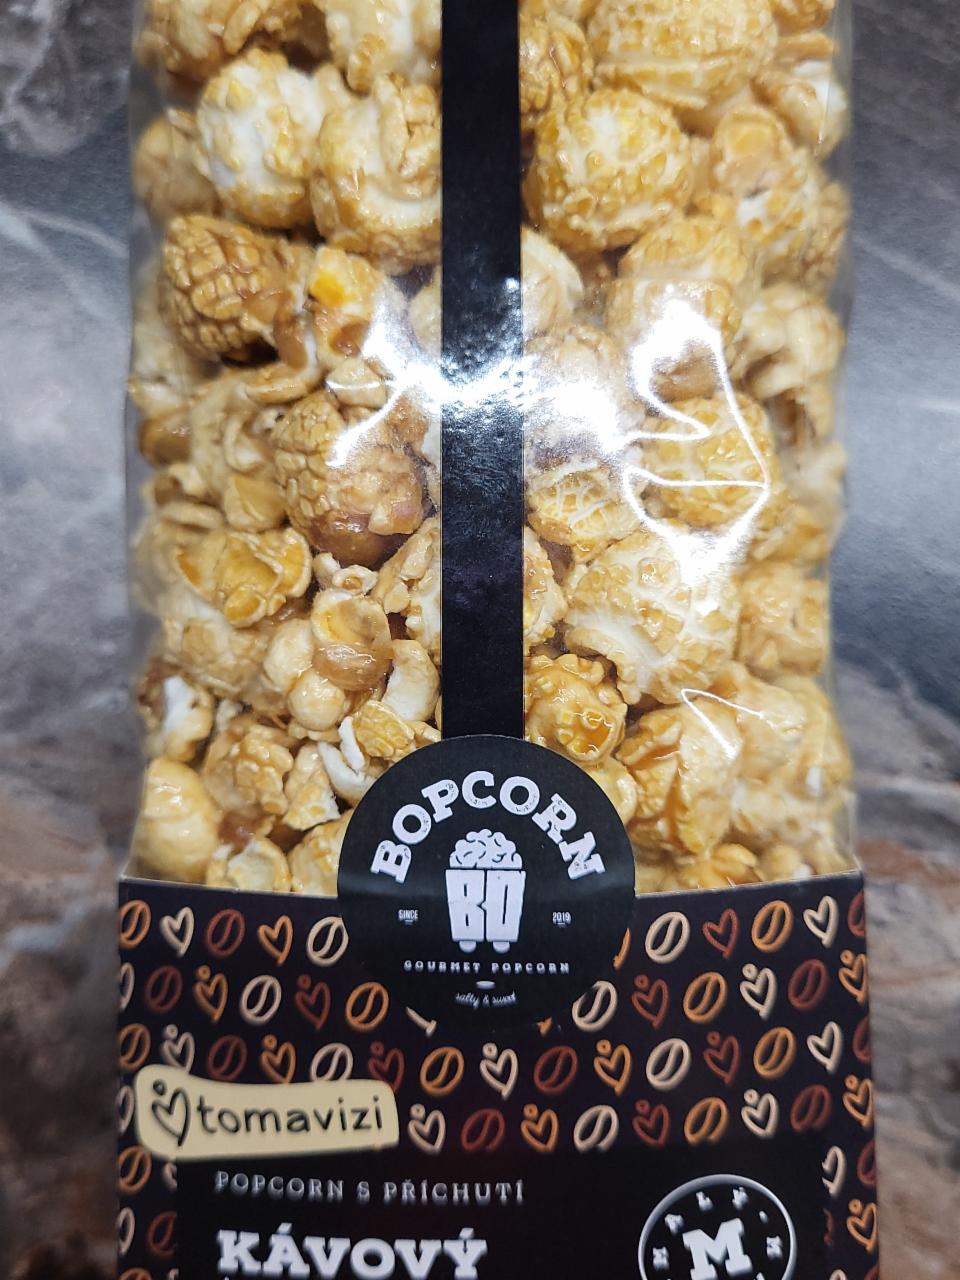 Fotografie - Popcorn s příchutí Kávový tomavizi Bopcorn